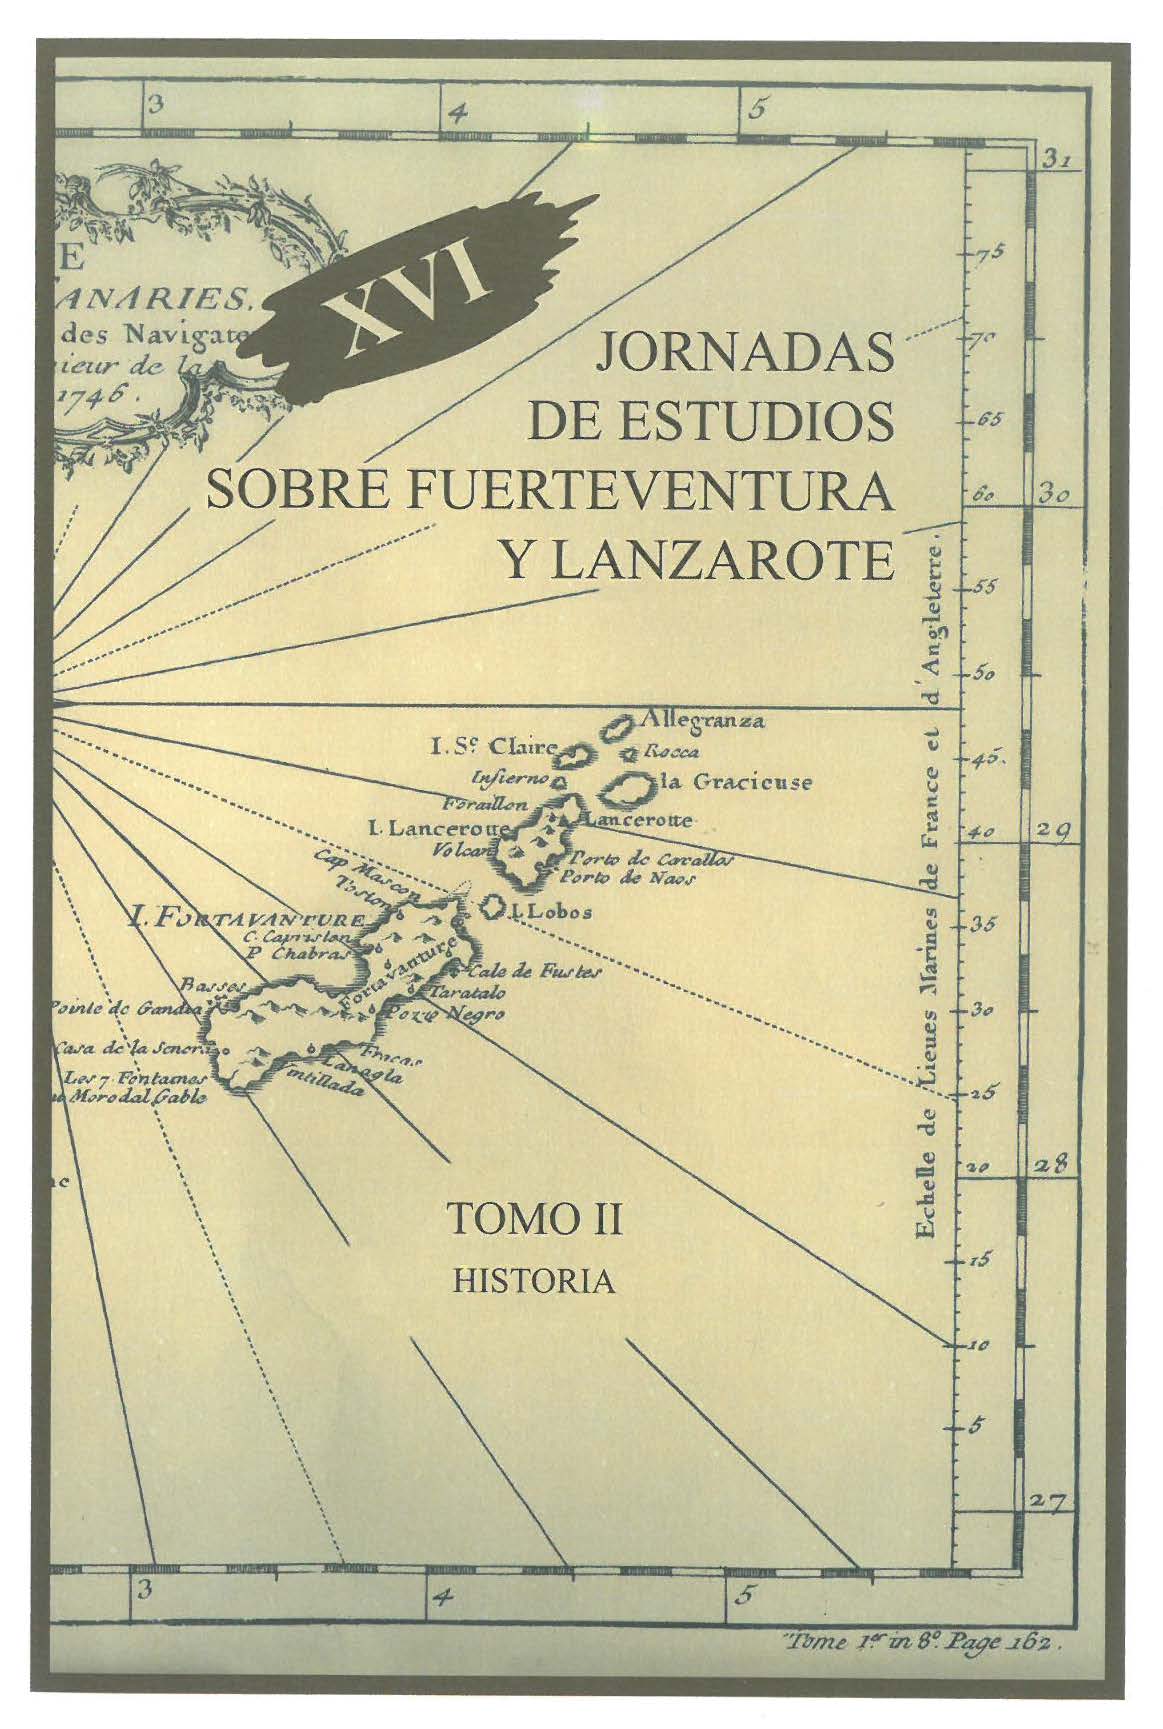 Un análisis del paisaje agrosocial de Lanzarote en el siglo XVIII: el cortijo de Testeyna y el proceso volcánico de Chimanfaya